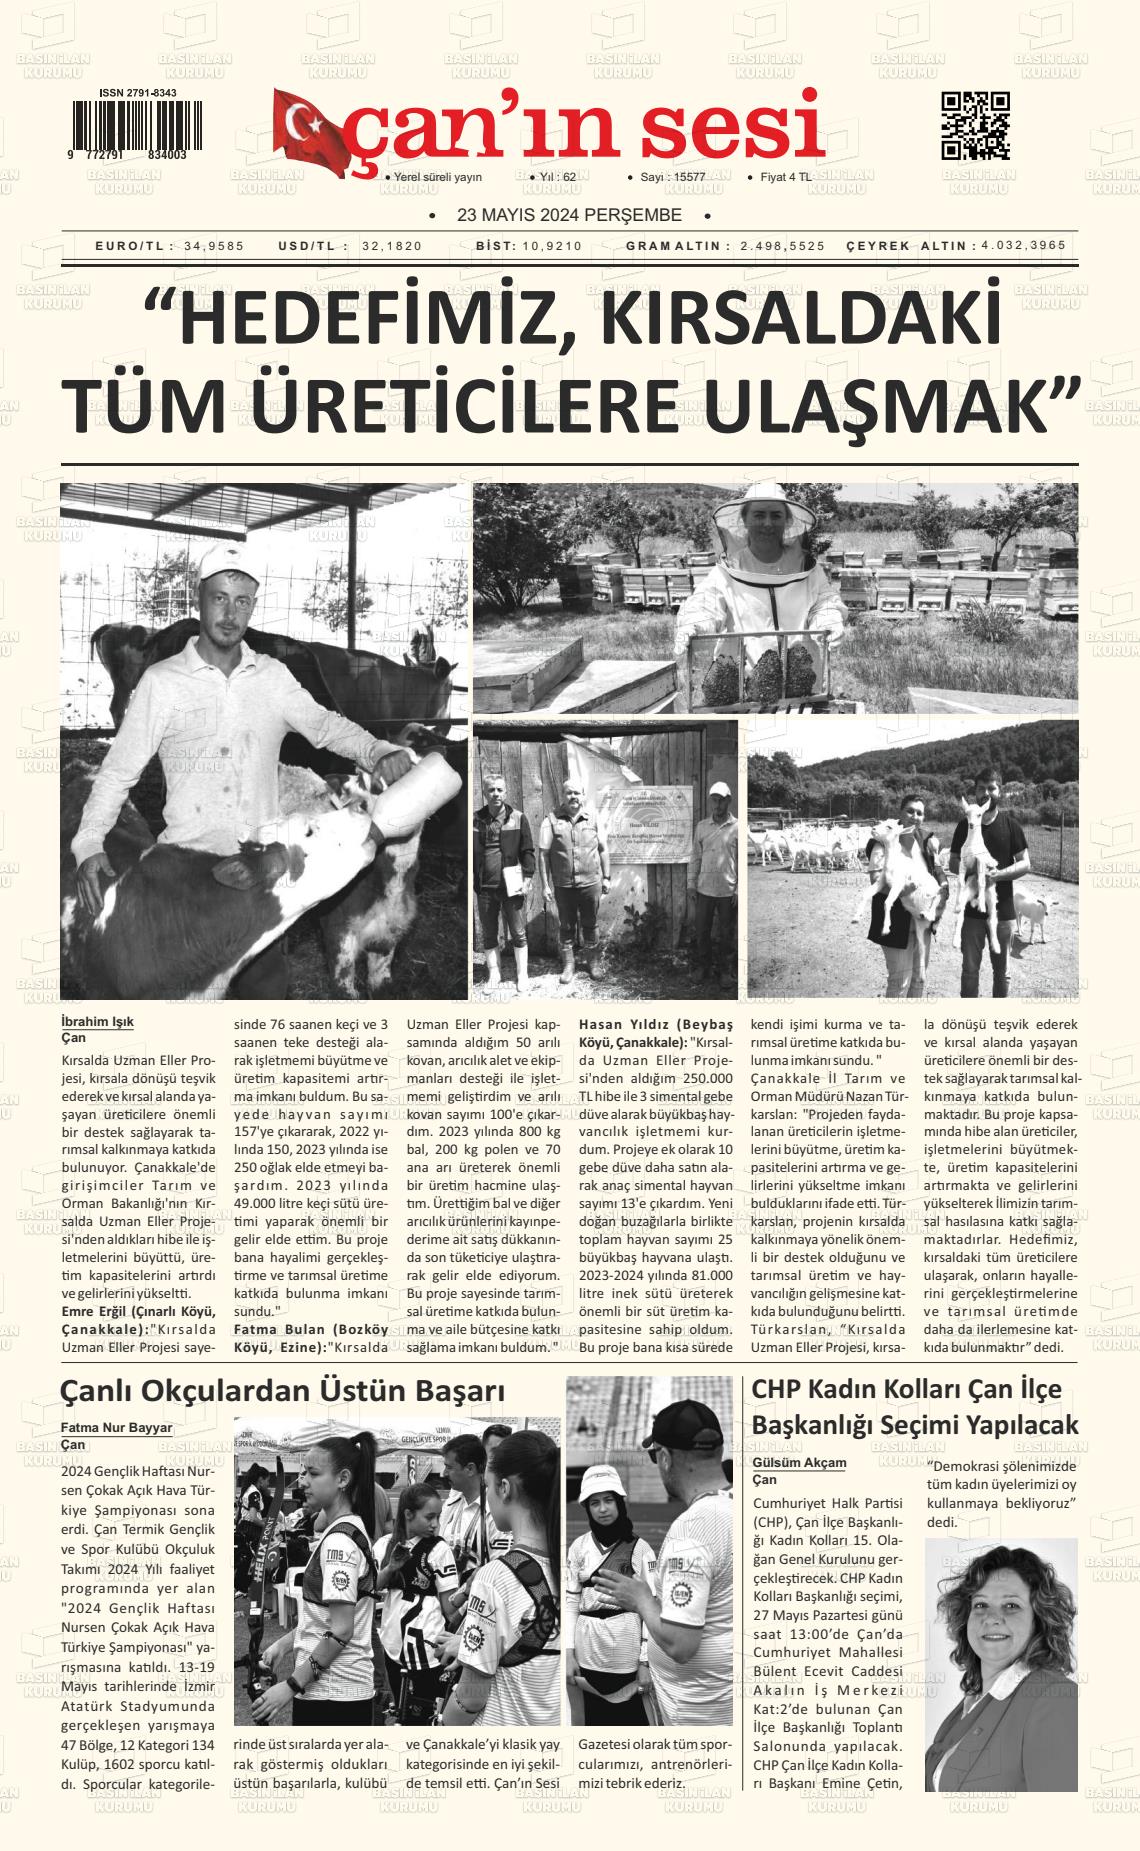 ÇANIN SESİ Gazetesi